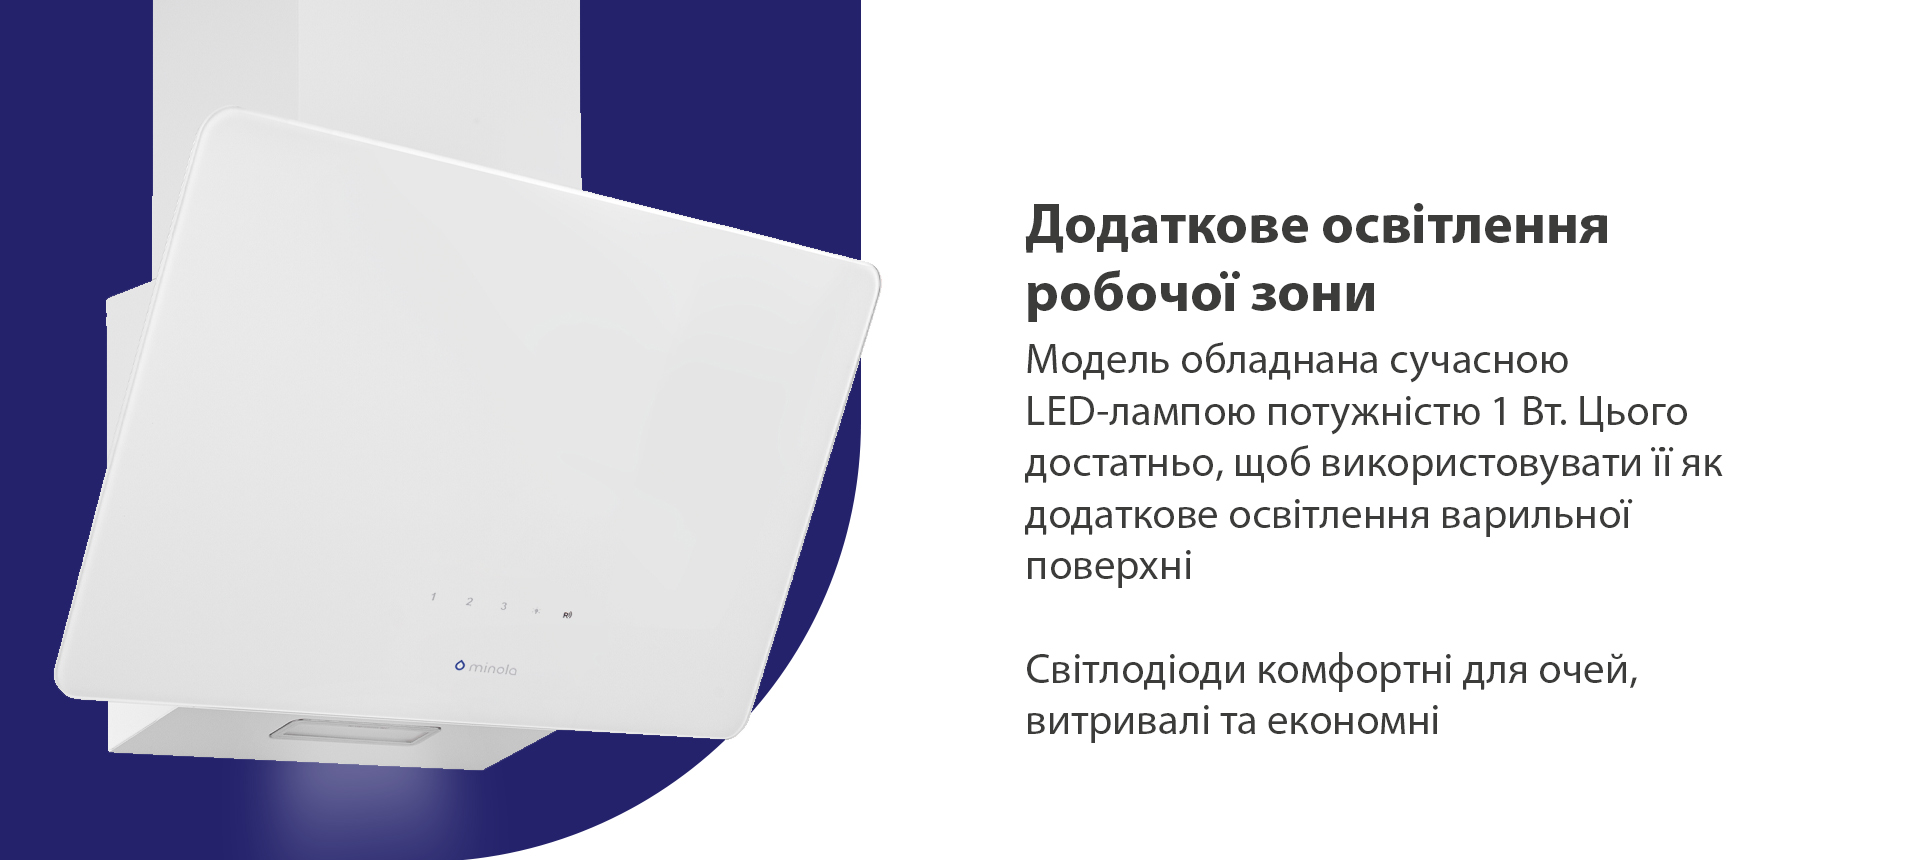 Модель обладнана сучасною LED-лампою потужністю 1 Вт